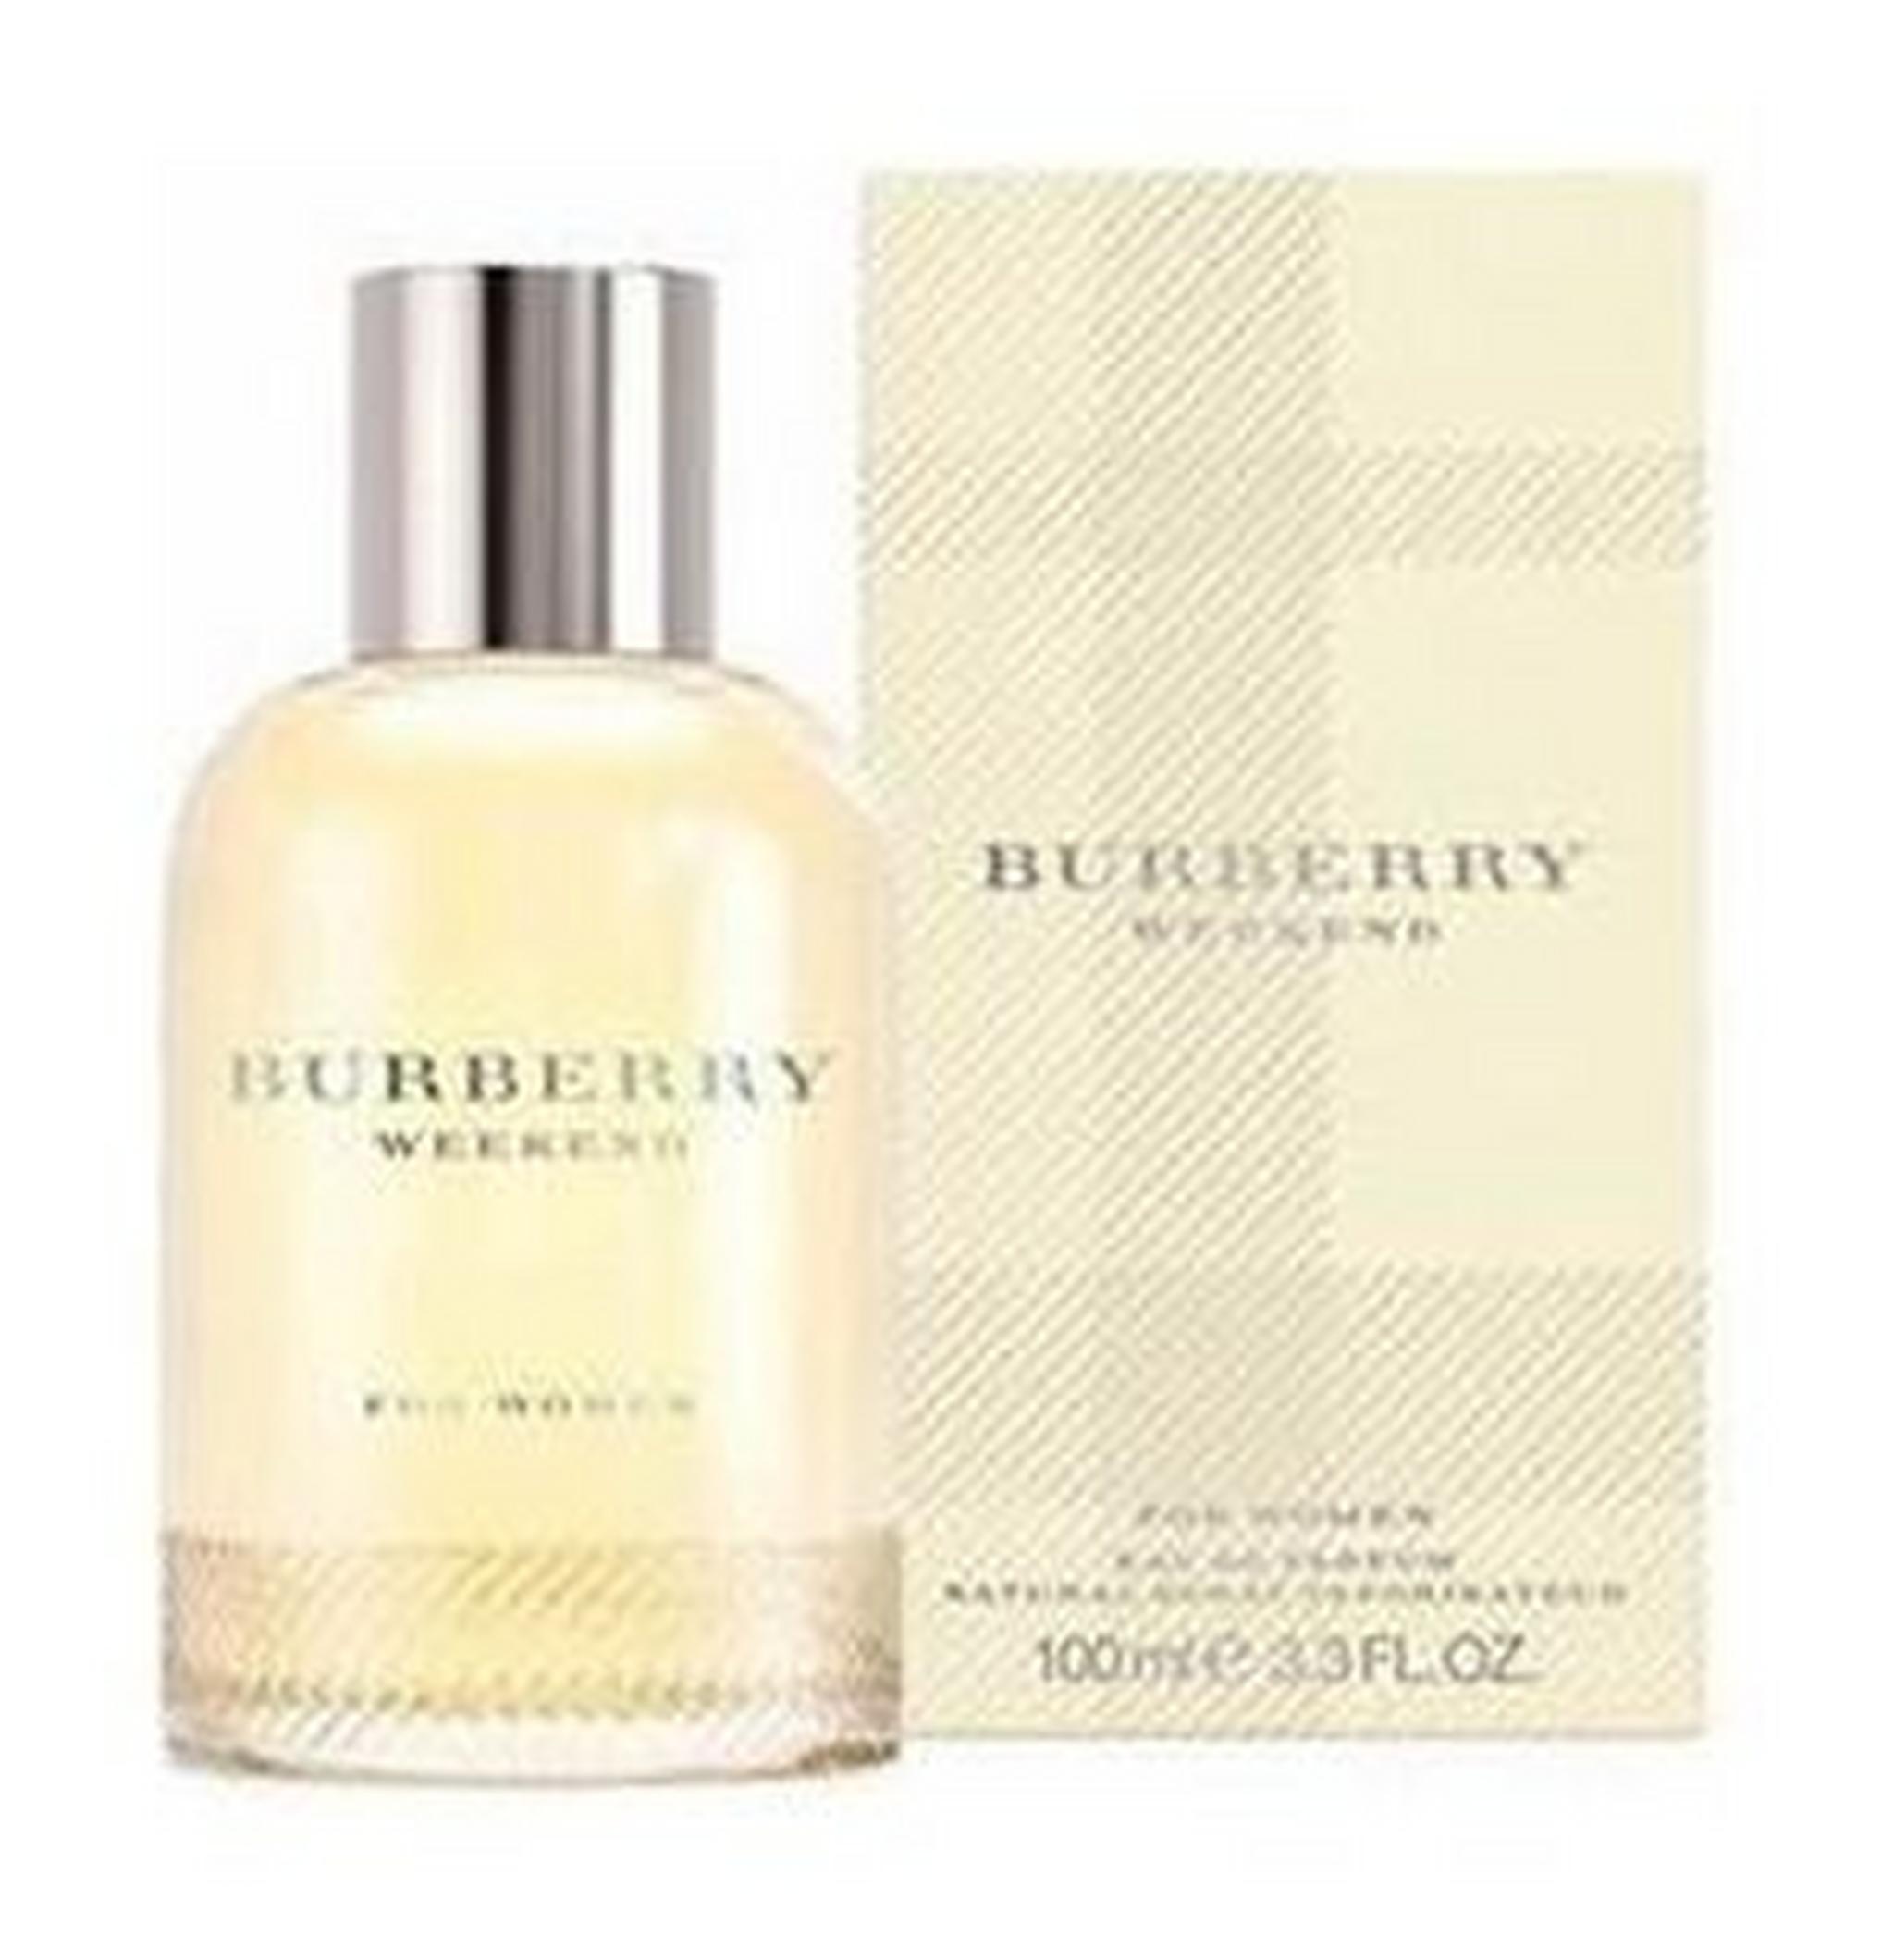 Burberry Weekend For Women 100 ml Eau de Parfum